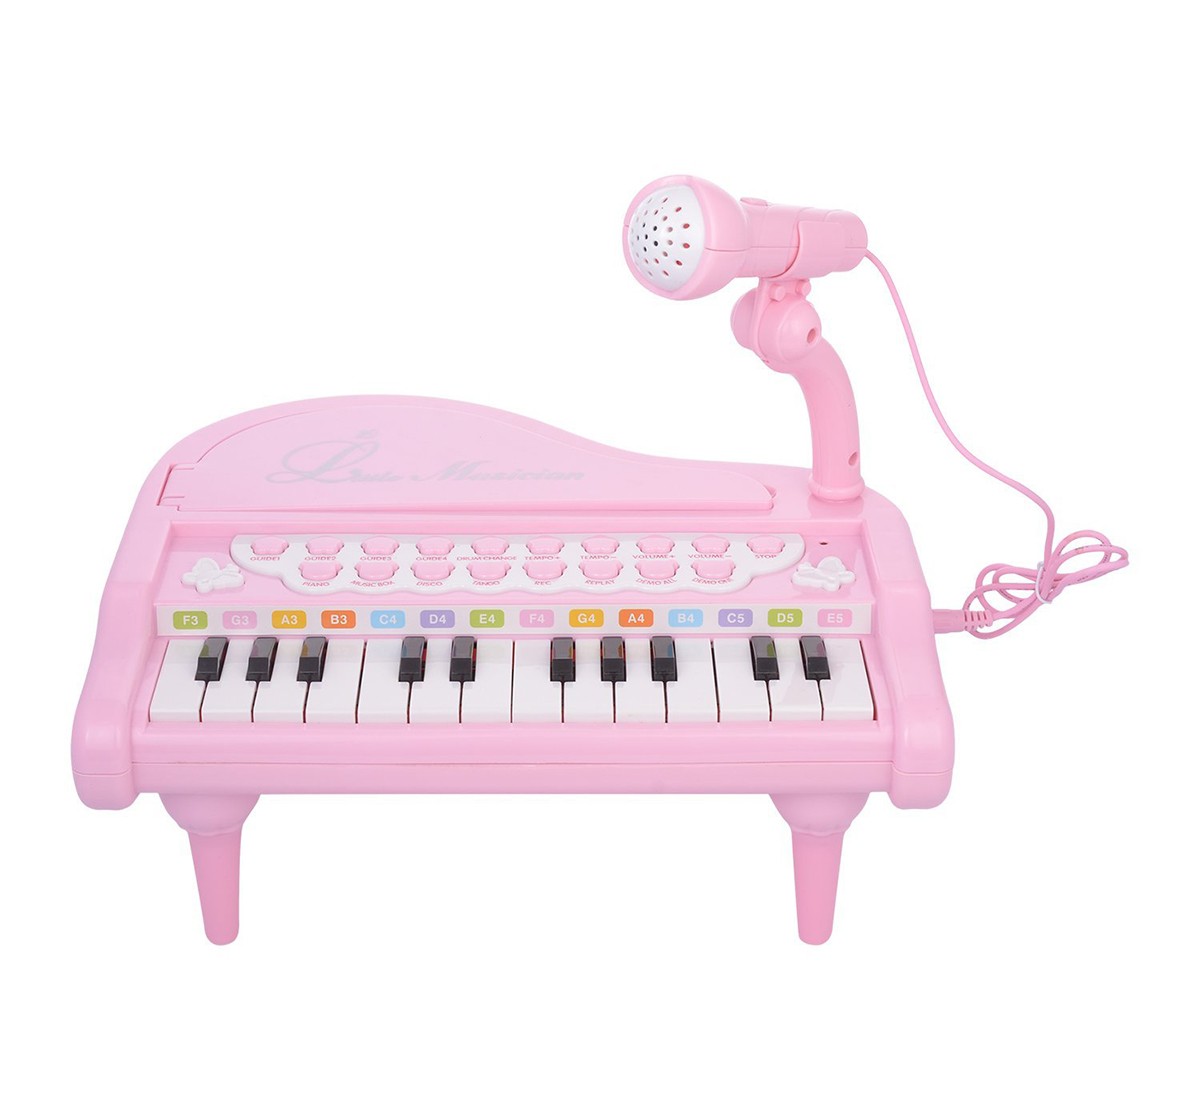 Baoli Comdaq Mini Table Top Piano for Kids age 3Y+ (Pink)